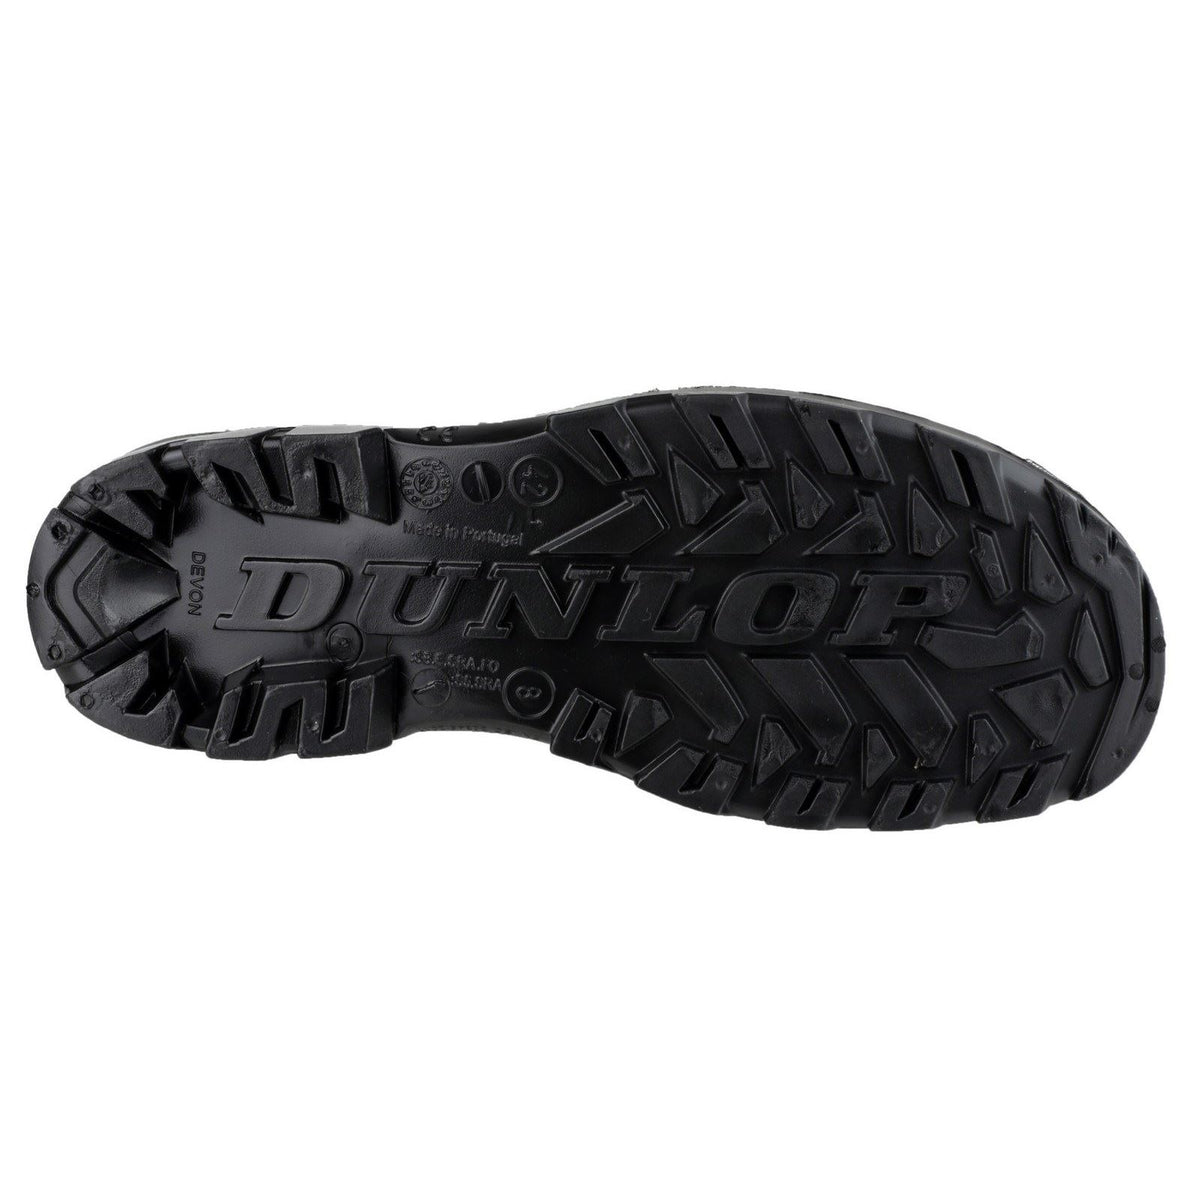 Dunlop Devon Full Safety Wellington